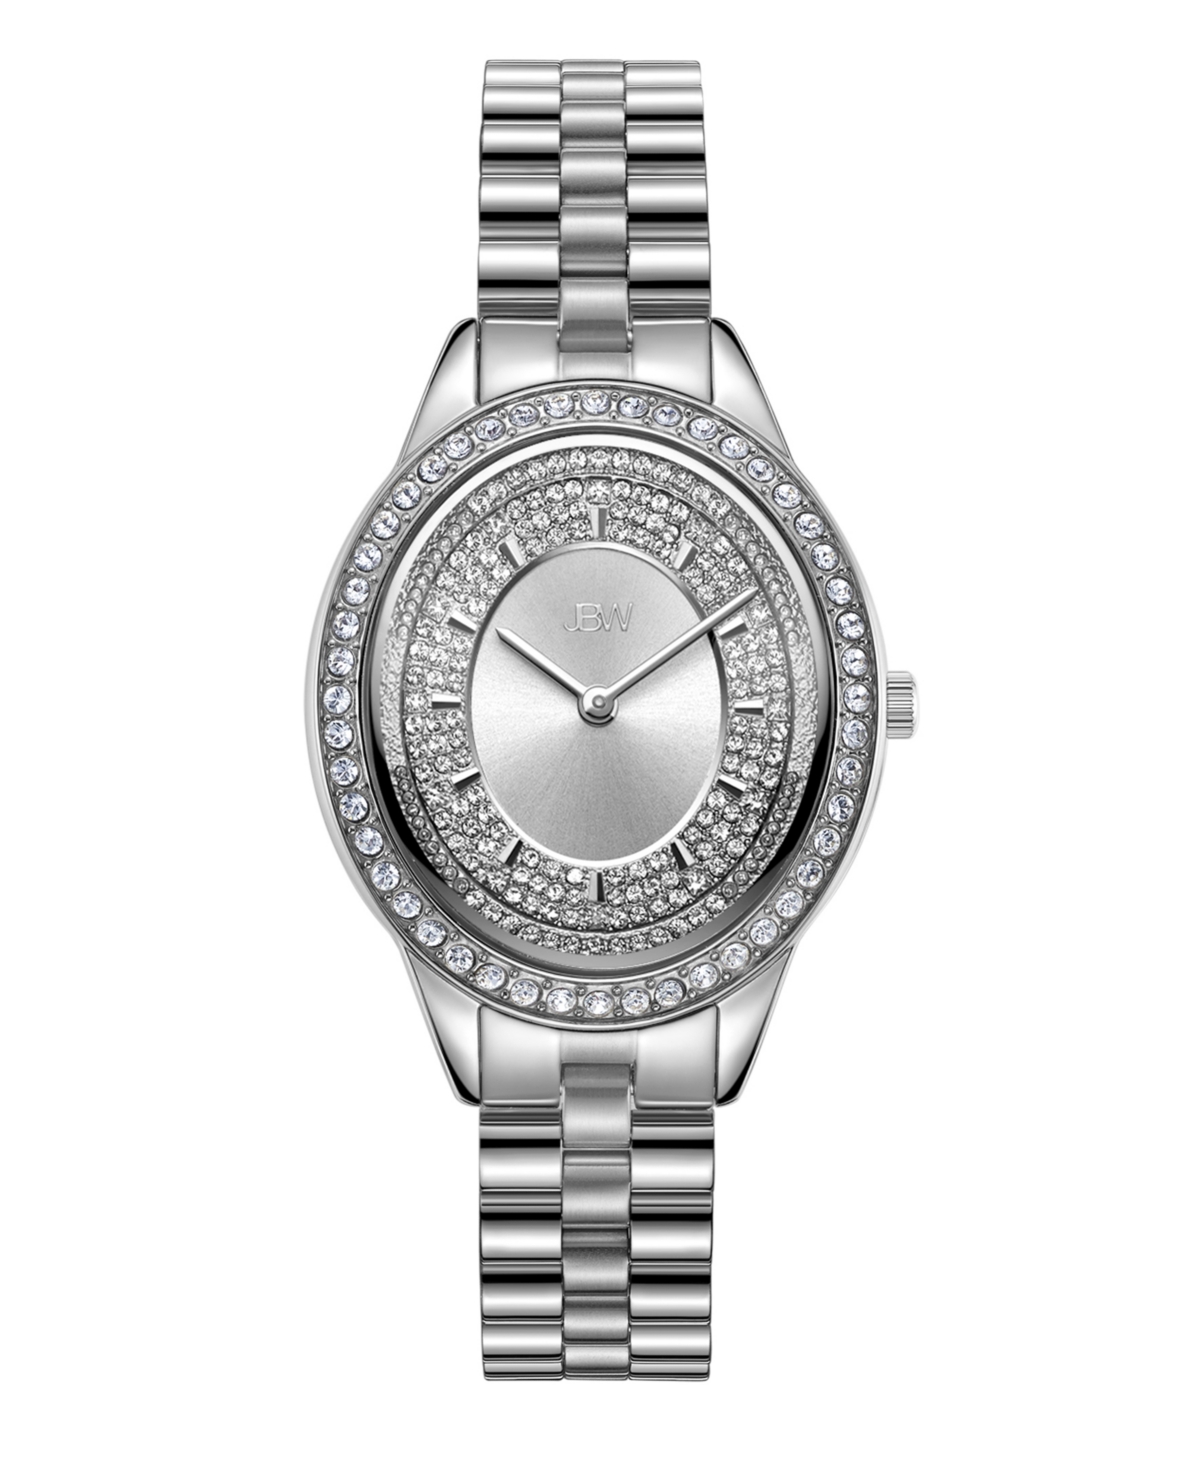 Women's Bellini Diamond (1/8 ct. t.w.) Watch in Stainless-steel Watch 30mm - Silver